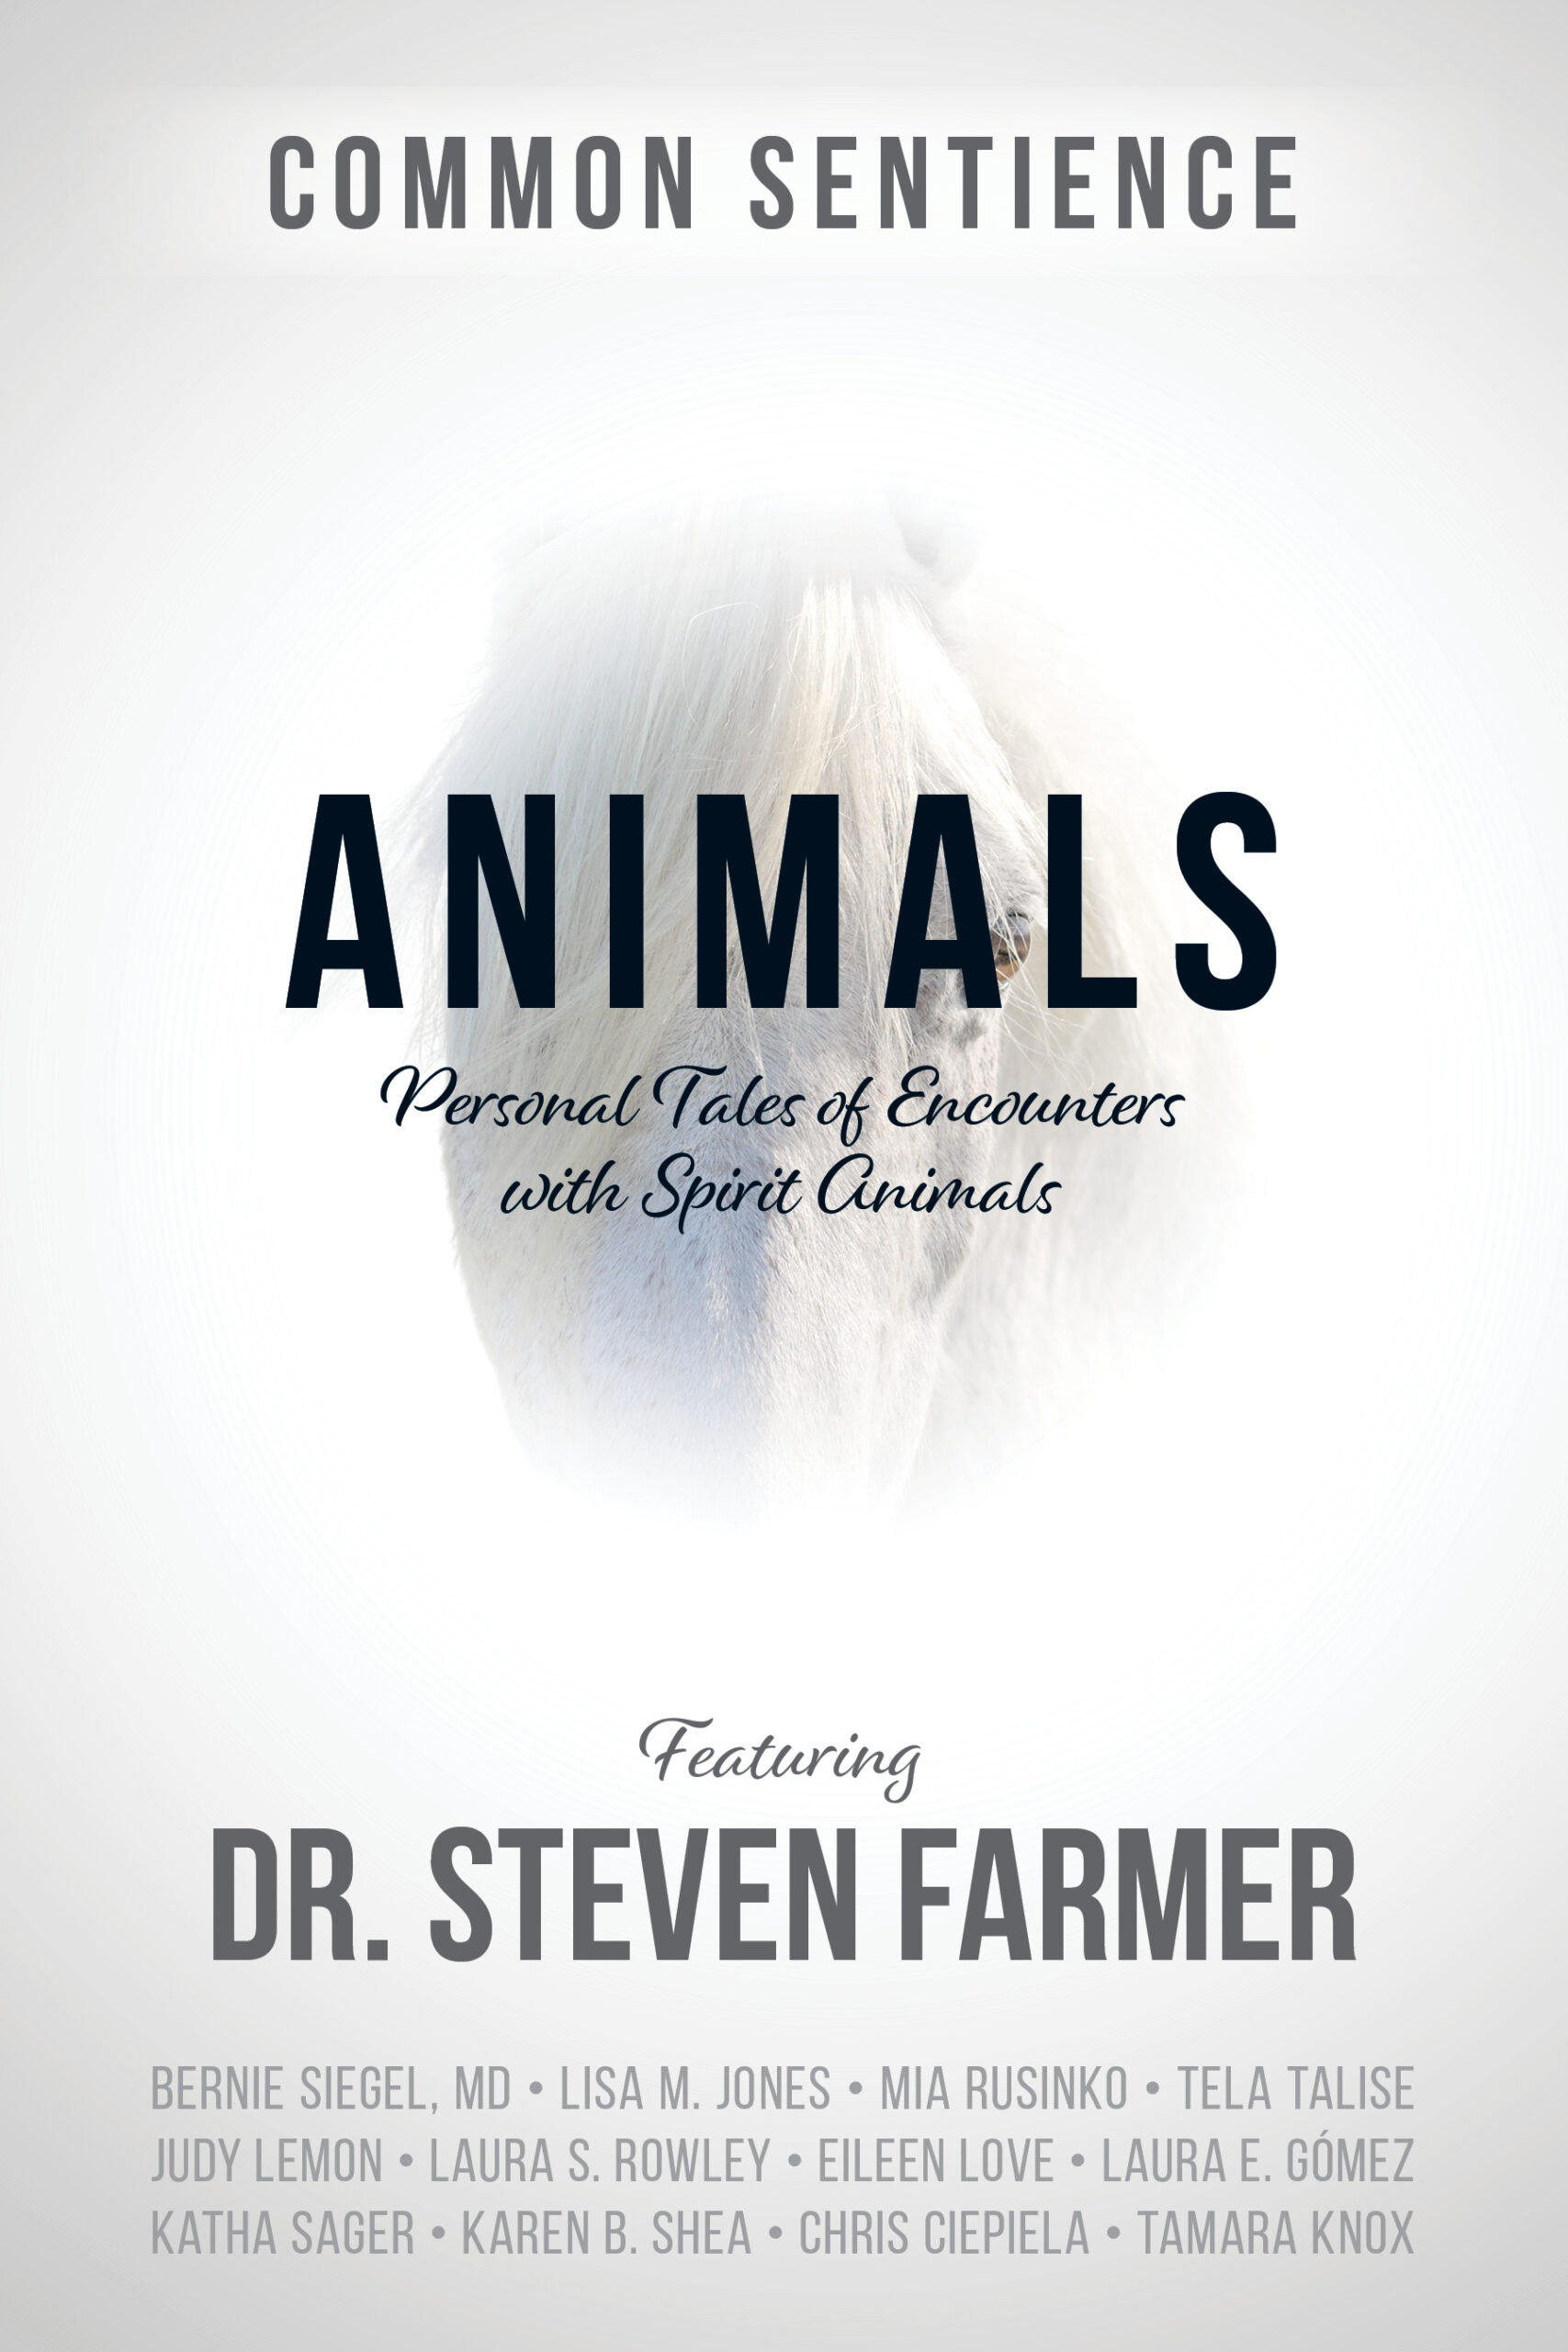 ANIMALS with Karen B. Shea